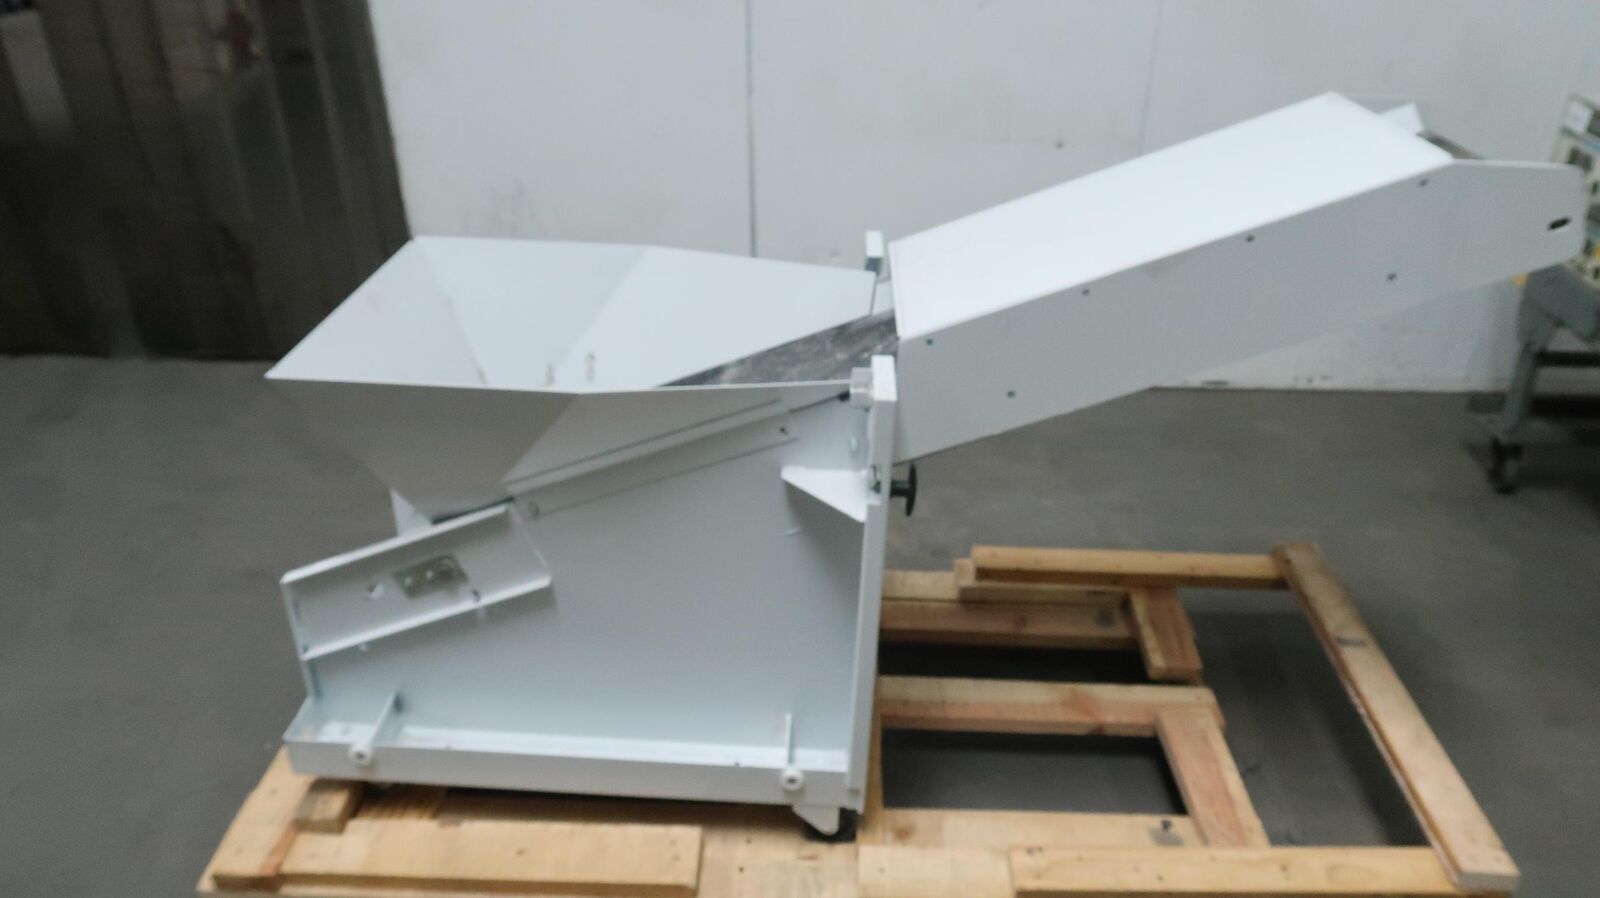 Krug & Priester 7050 Modular Incline Conveyor Belt System For Ideal 5009-2 Paper